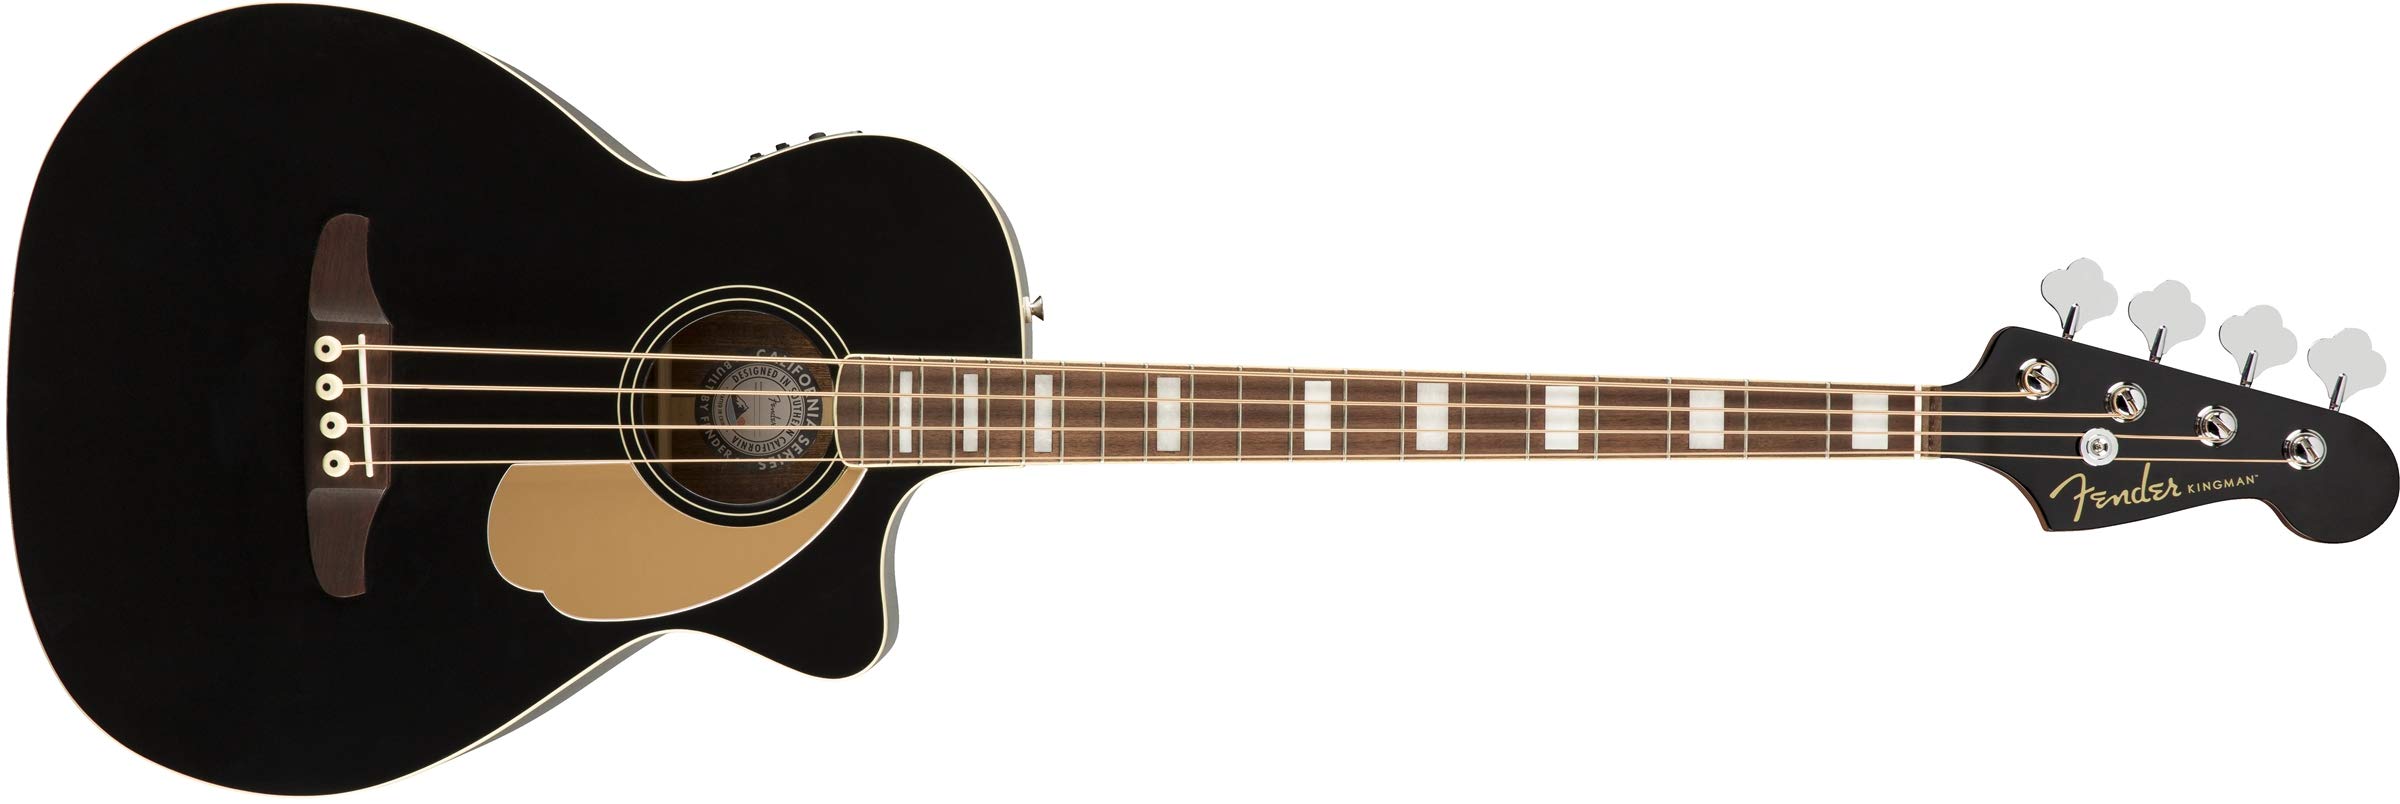 Fender Kingman 原声贝斯吉他 (V2) - 黑色 - 带包 - 胡桃木指板...